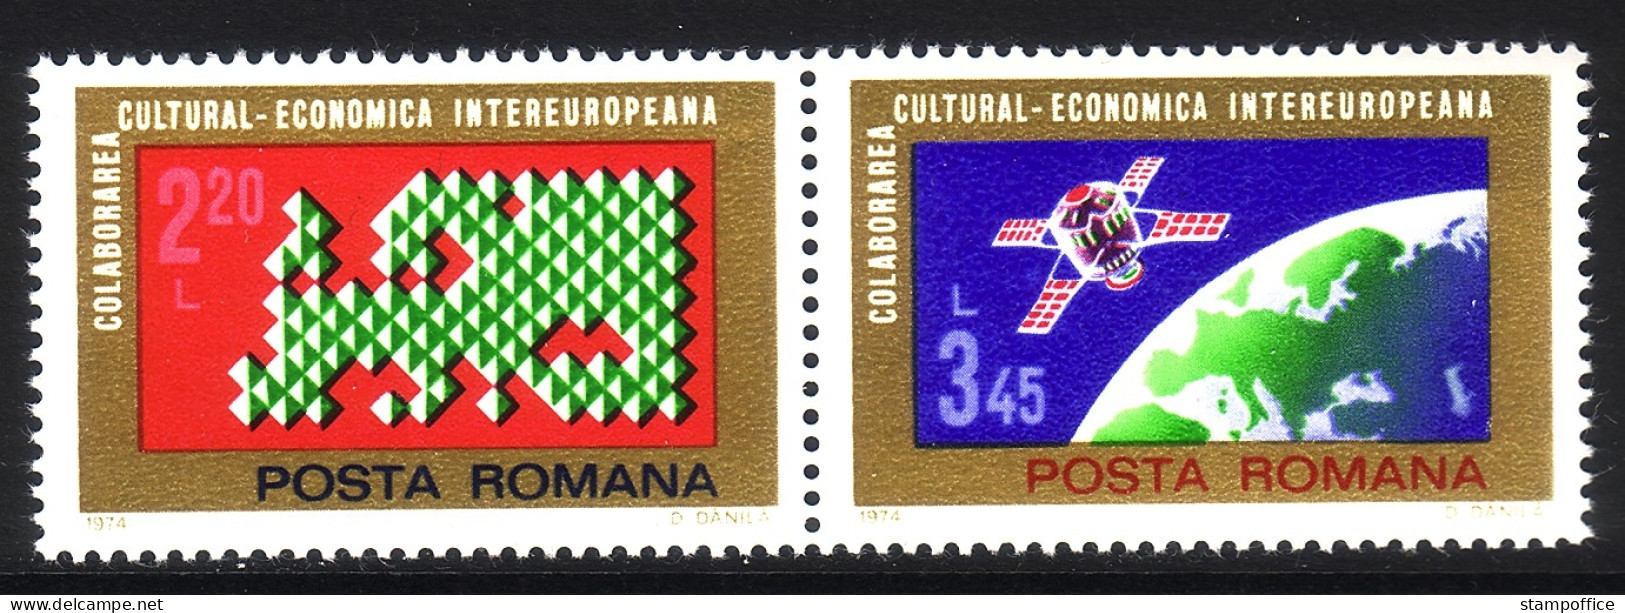 RUMÄNIEN MI-NR. 3189-3190 POSTFRISCH(MINT) EUROPA MITLÄUFER 1974 - INTEREUROPA - Neufs